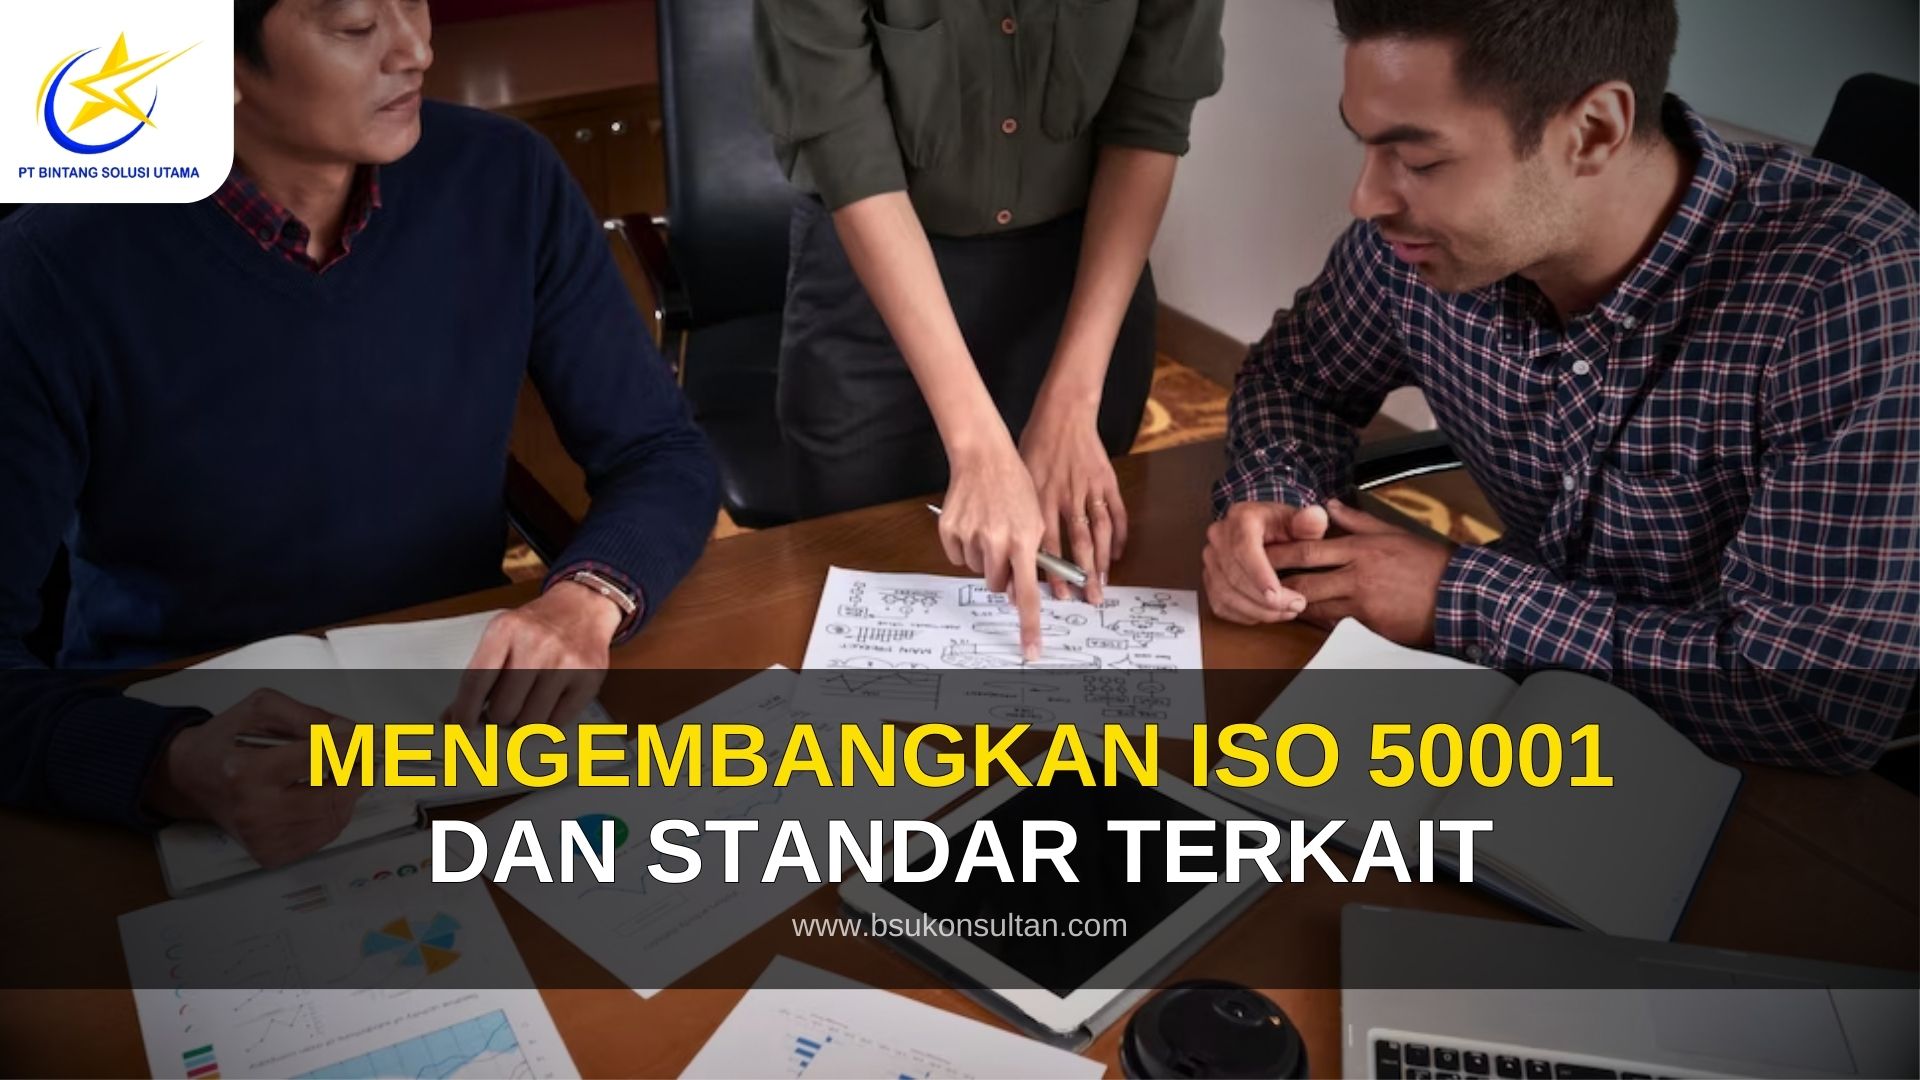 Mengembangkan ISO 50001 dan Standar terkait